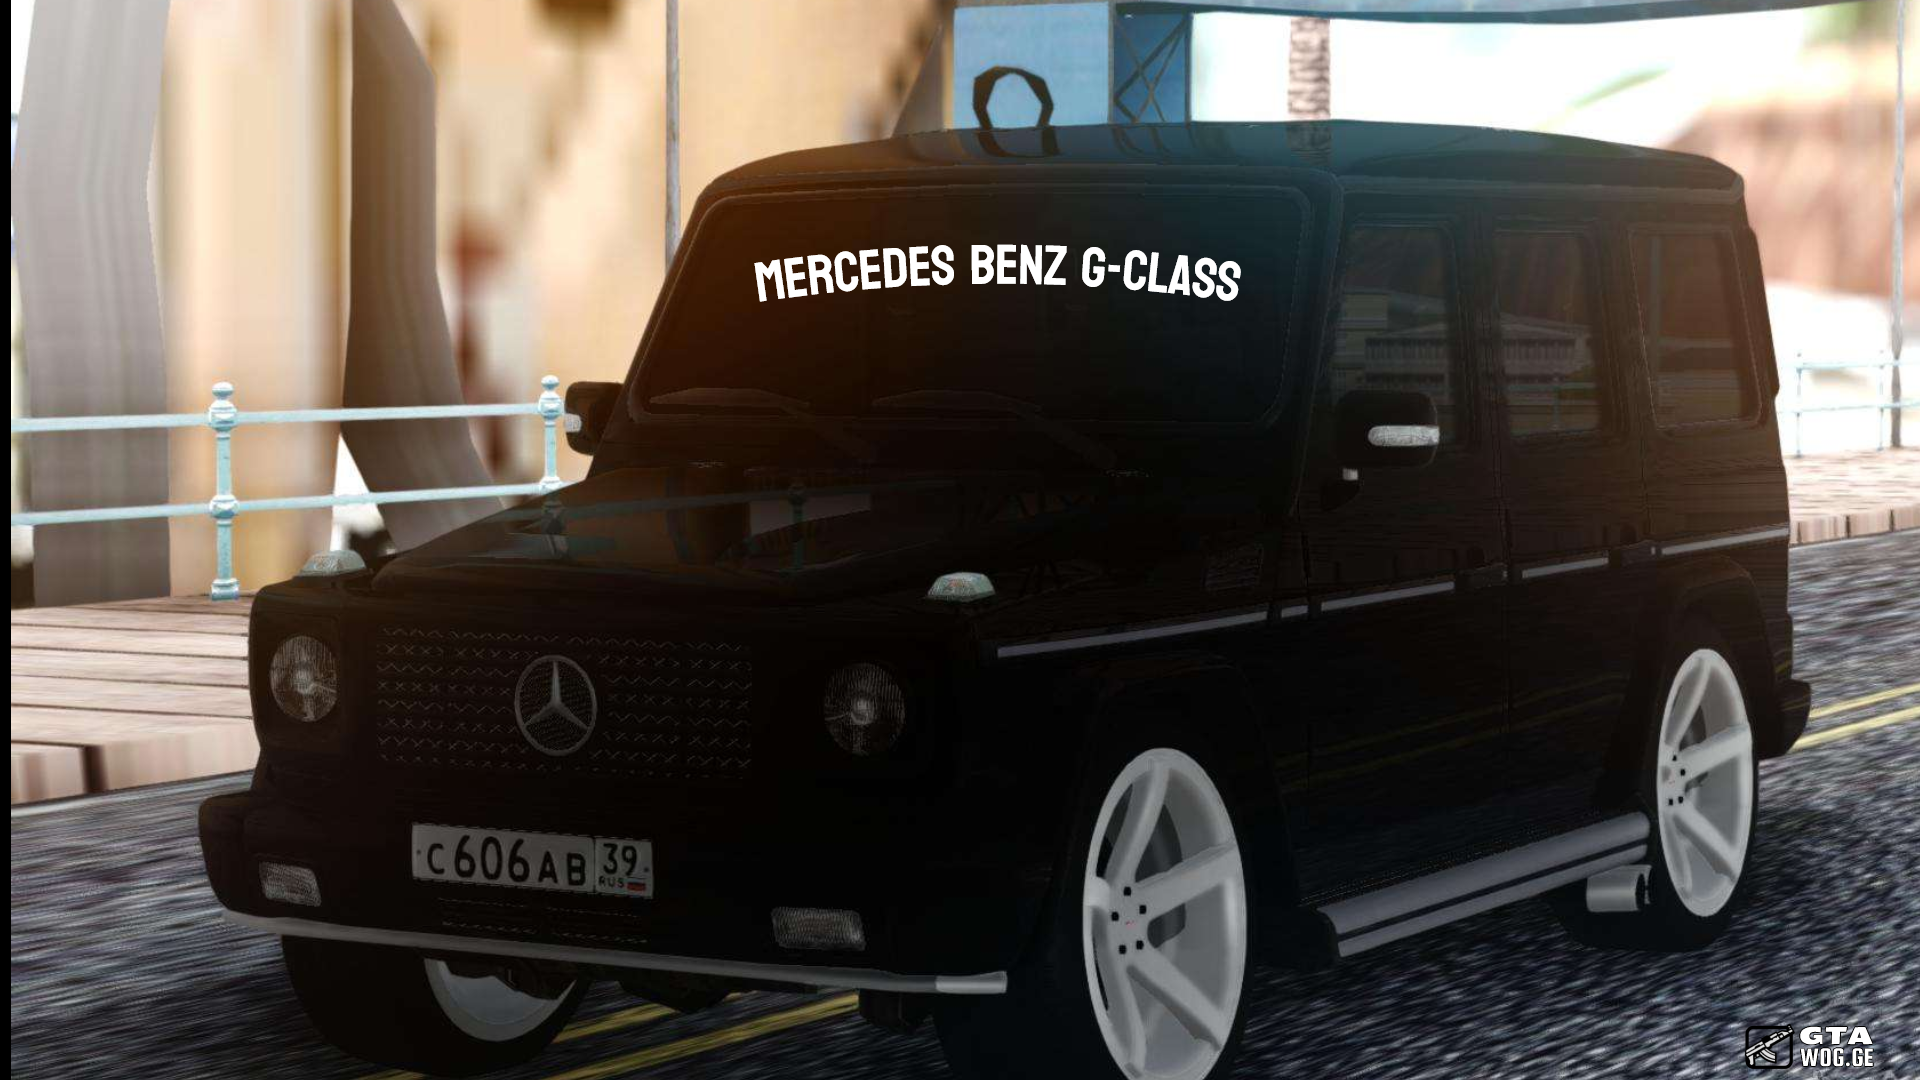 [Cars] Mecredes Benz G-Class